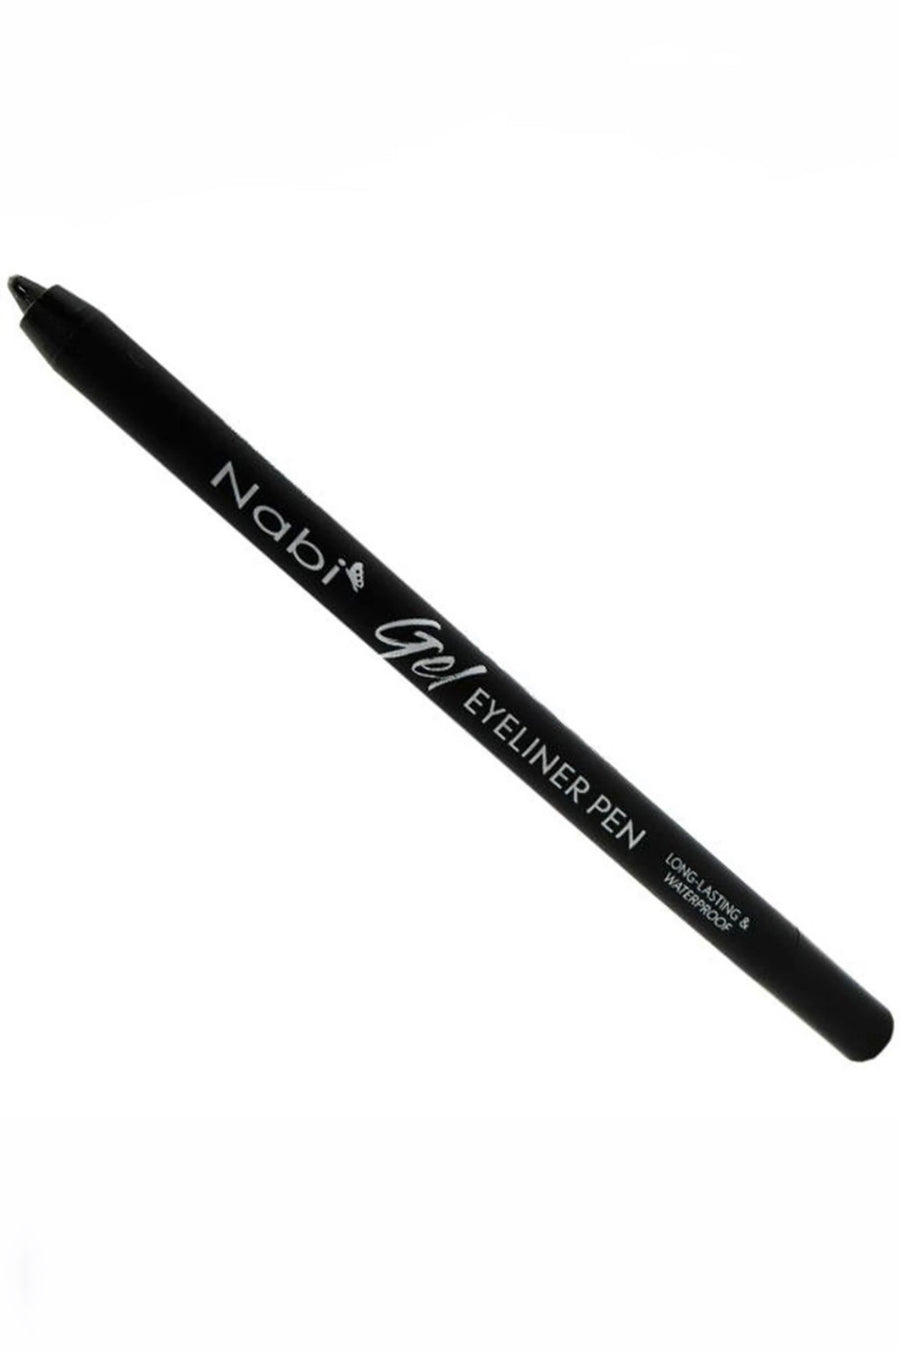 Nabi, Black waterproof eyeliner pen